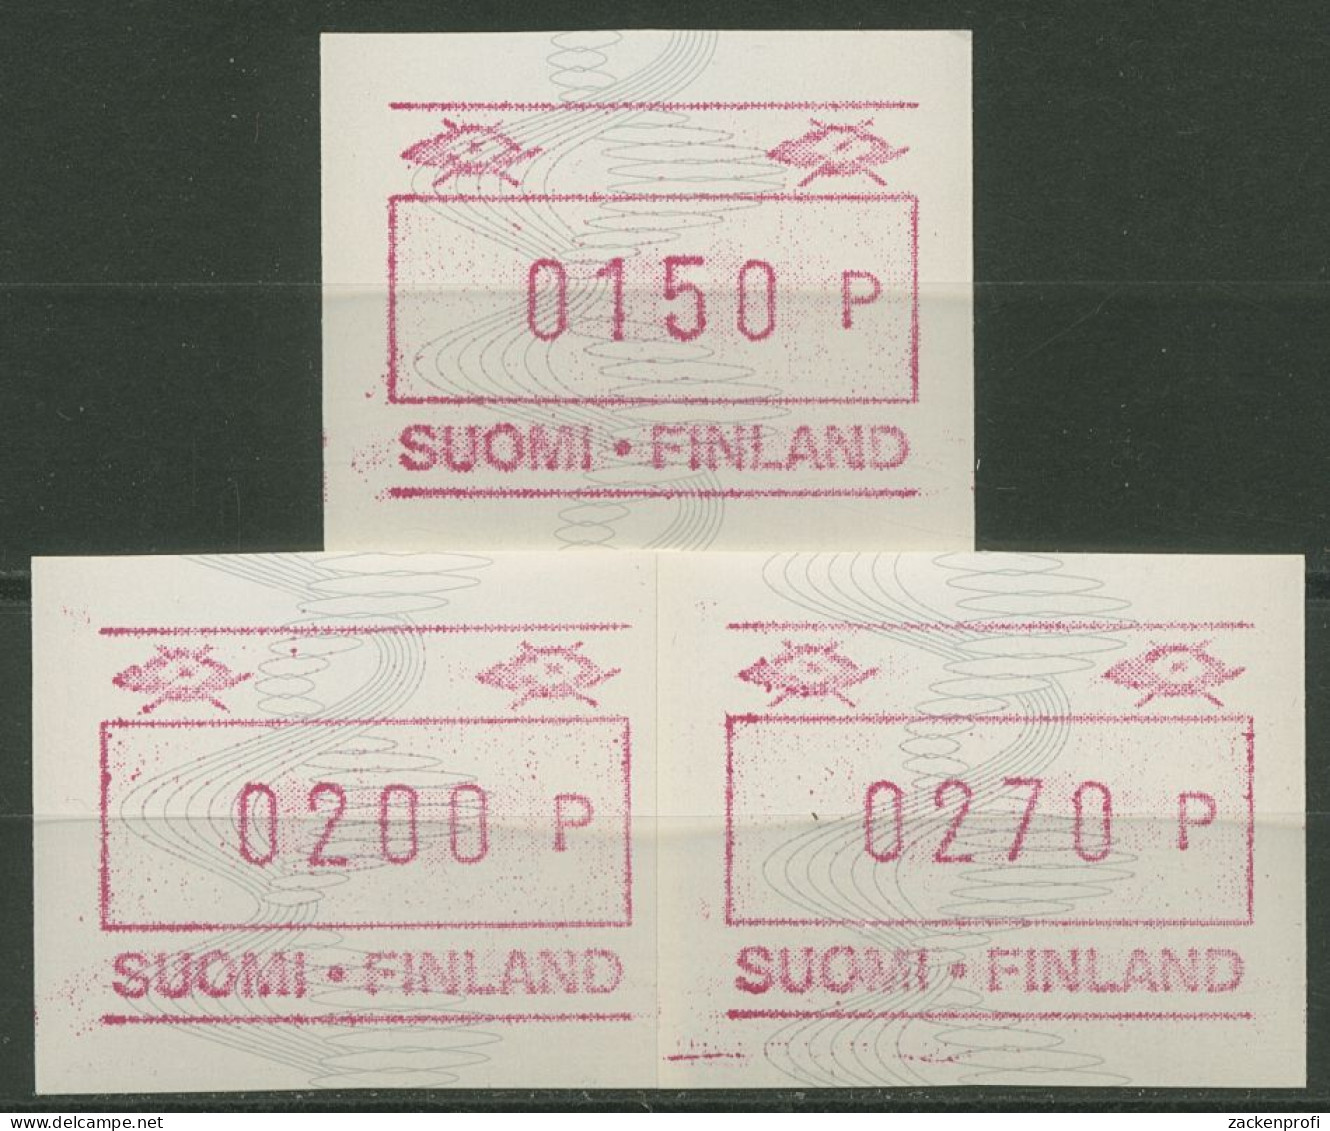 Finnland ATM 1990 Ohne Automaten-Nr., Satz ATM 7 C S1 Postfrisch - Vignette [ATM]